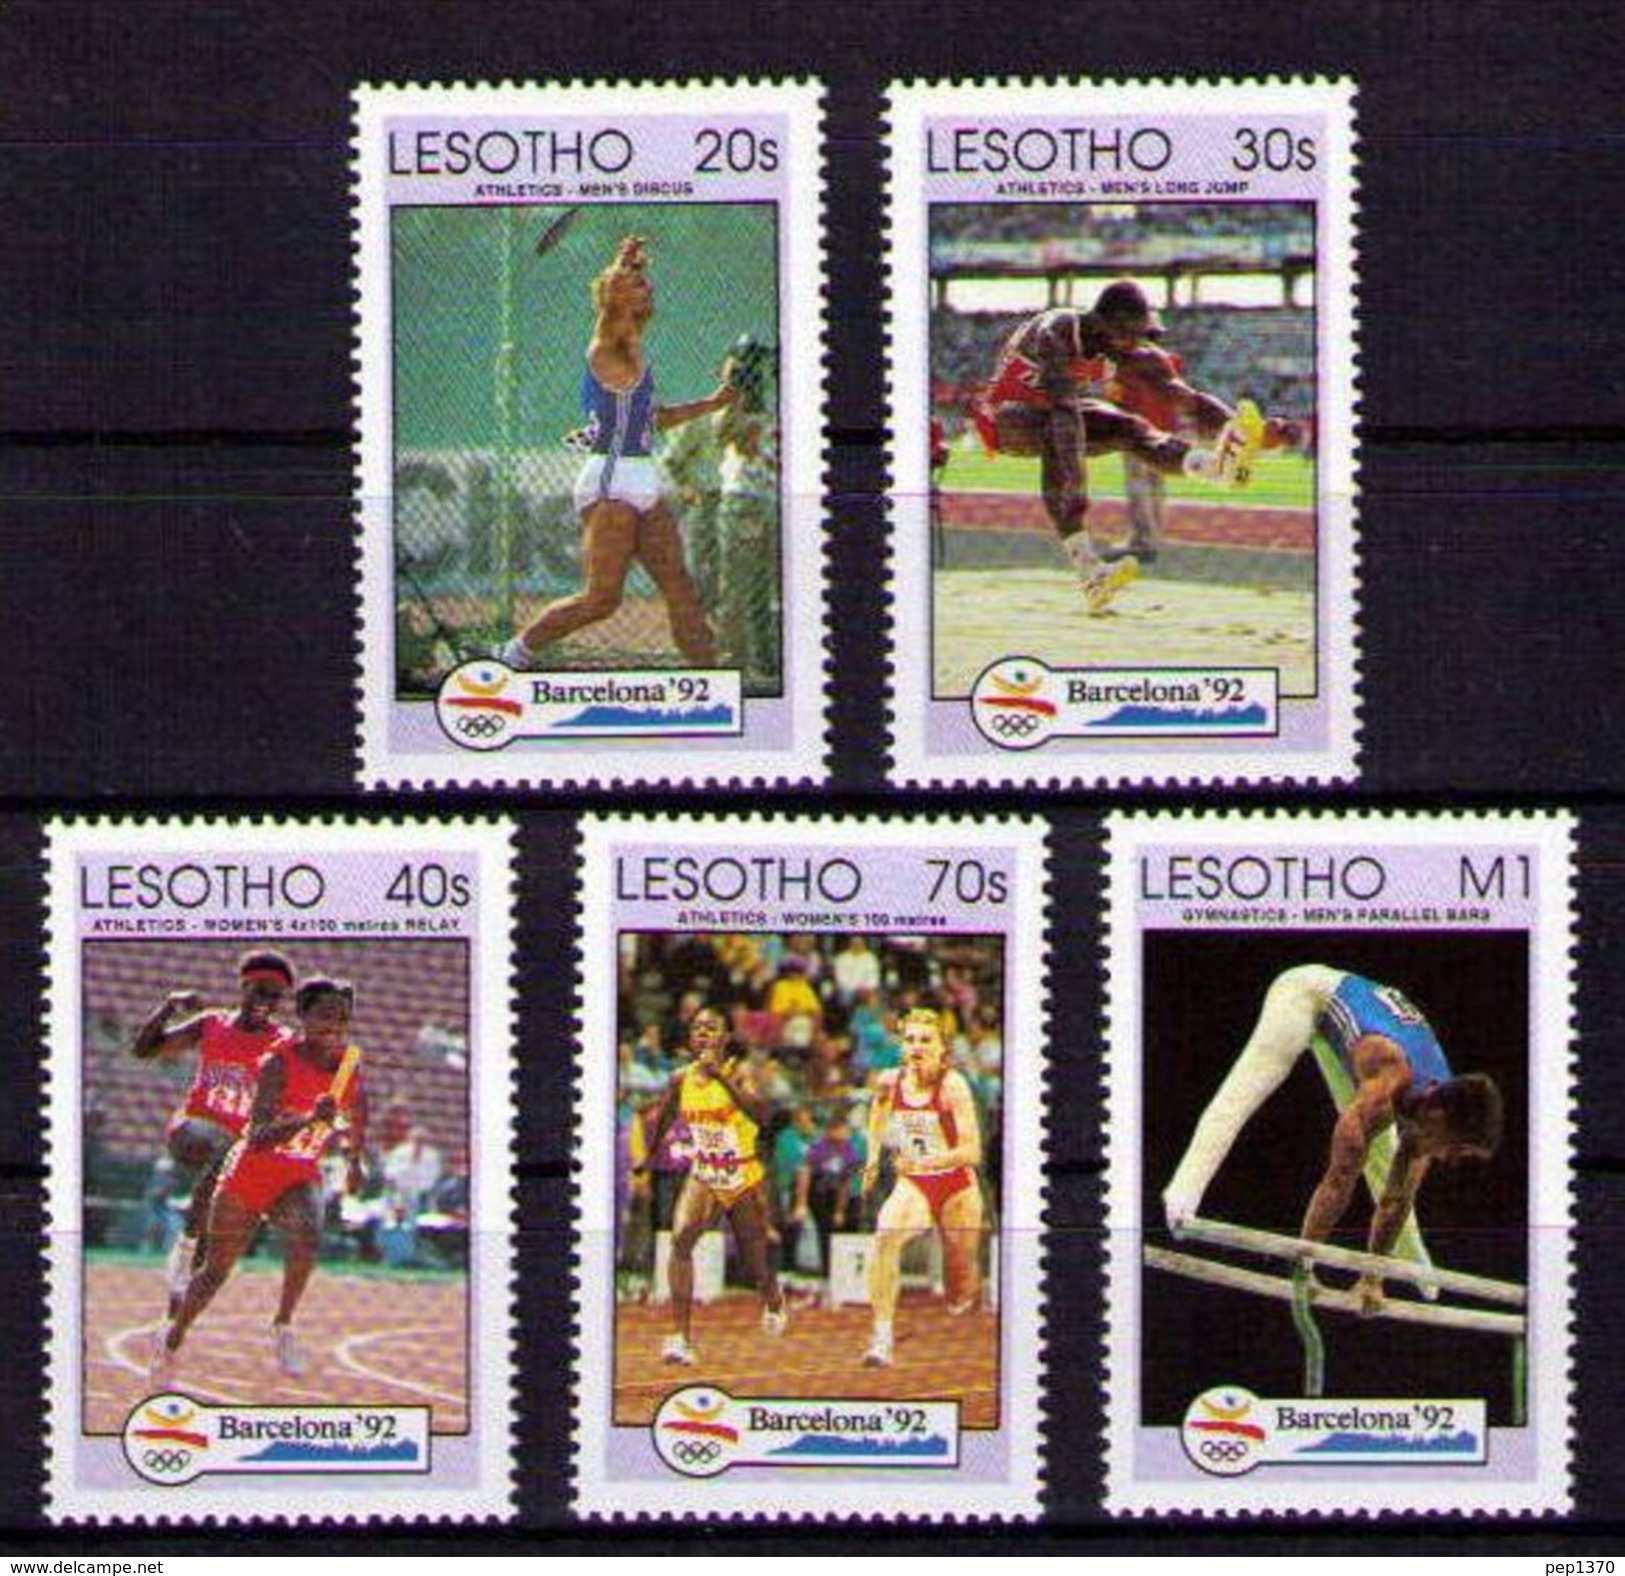 LESOTHO 1992 OLYMPICS BARCELONA 92 - YVERT Nº 1032-1036 - MICHEL 990-994 - SCOTT 917-921 - Gymnastics